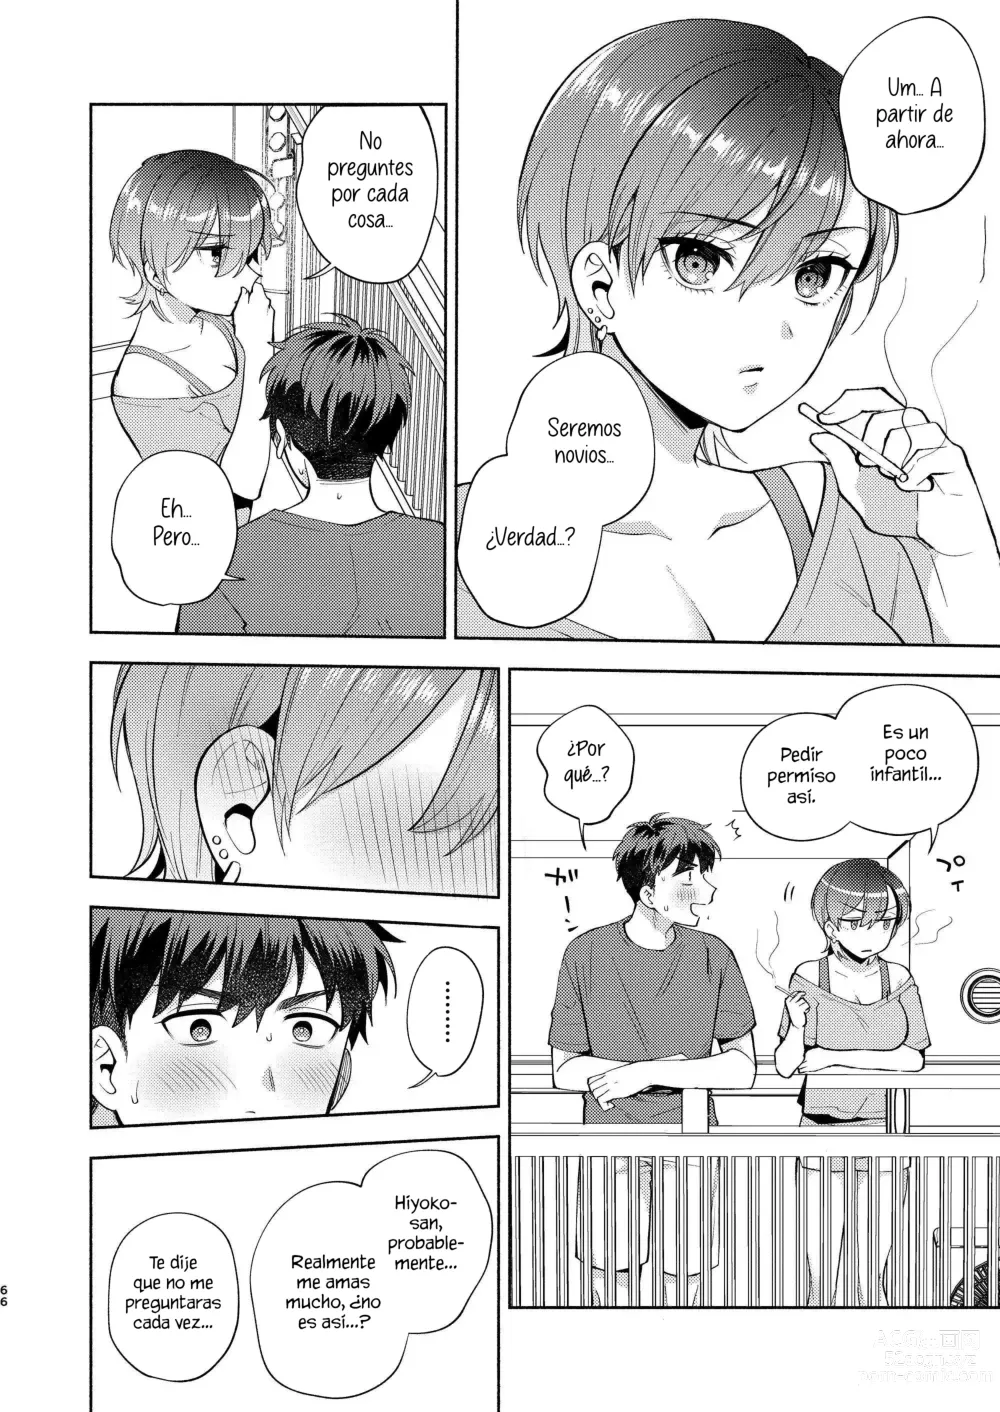 Page 65 of doujinshi Hiyoko es una entrometida